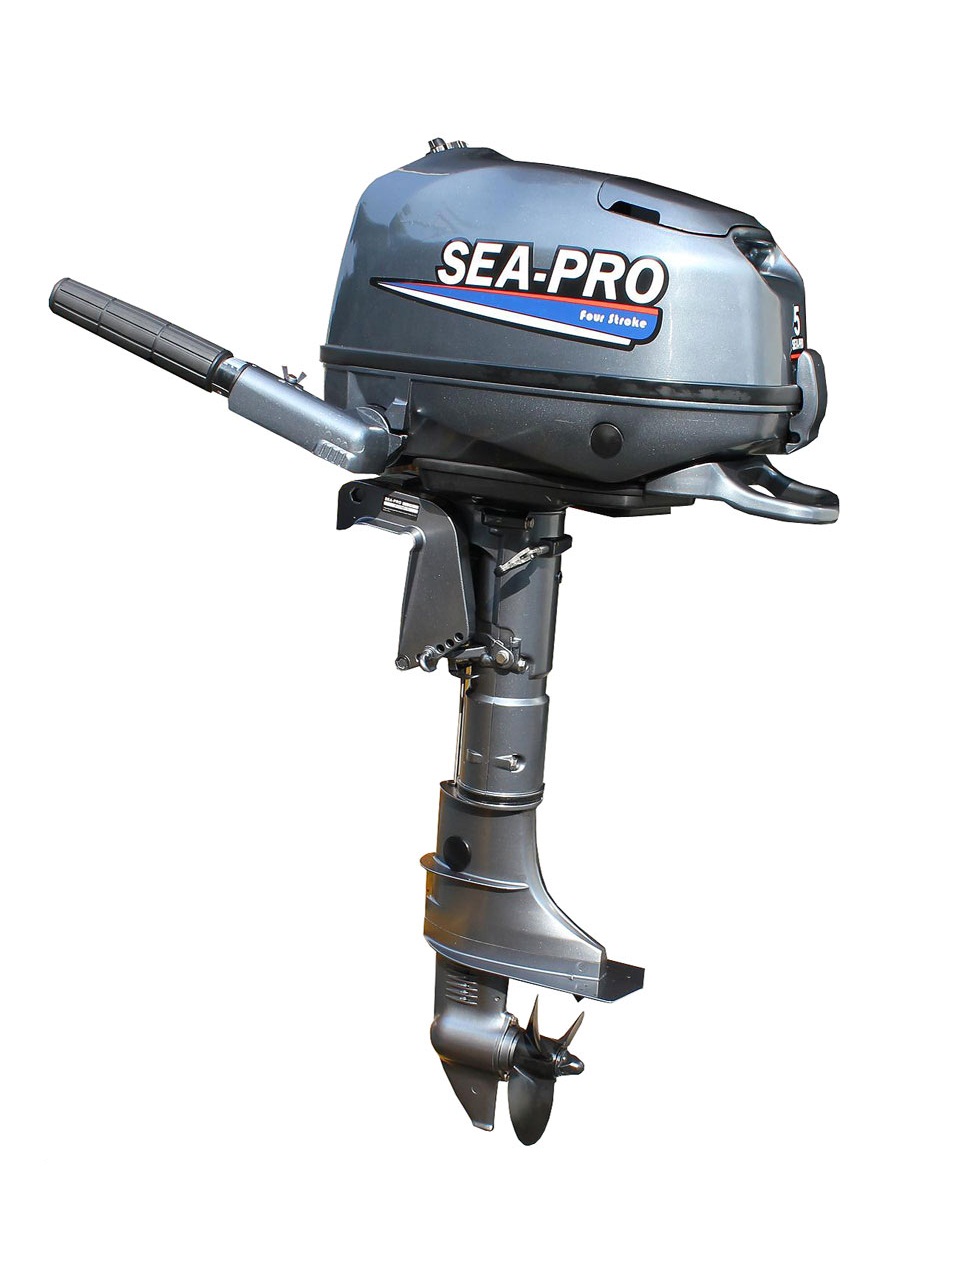 Купить лодочный мотор т. Лодочный мотор Sea-Pro f 4s. Sea-Pro мотор Лодочный t15 (s). Мотор Sea-Pro f 5s. Лодочный мотор Sea-Pro t5/s/Tarpon.